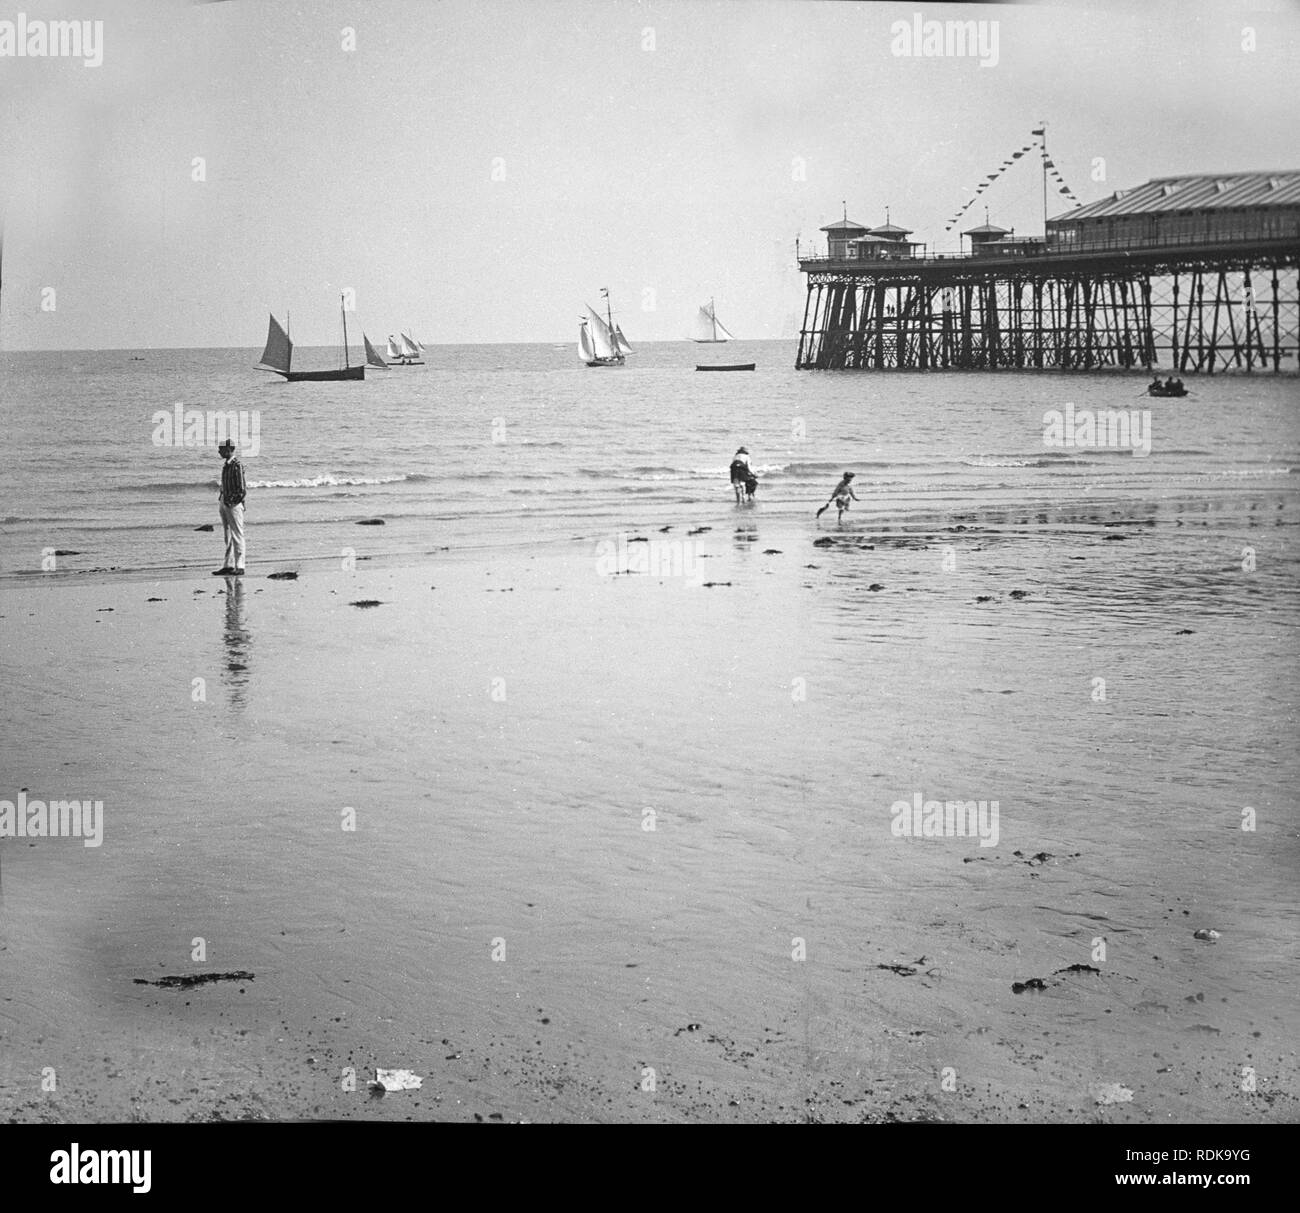 Späten viktorianischen Foto, den Strand und das Ende der Pier in Brighton, England. Einige kleine Segelboote auf dem Meer, und ein paar Leute am Strand genießen. Stockfoto